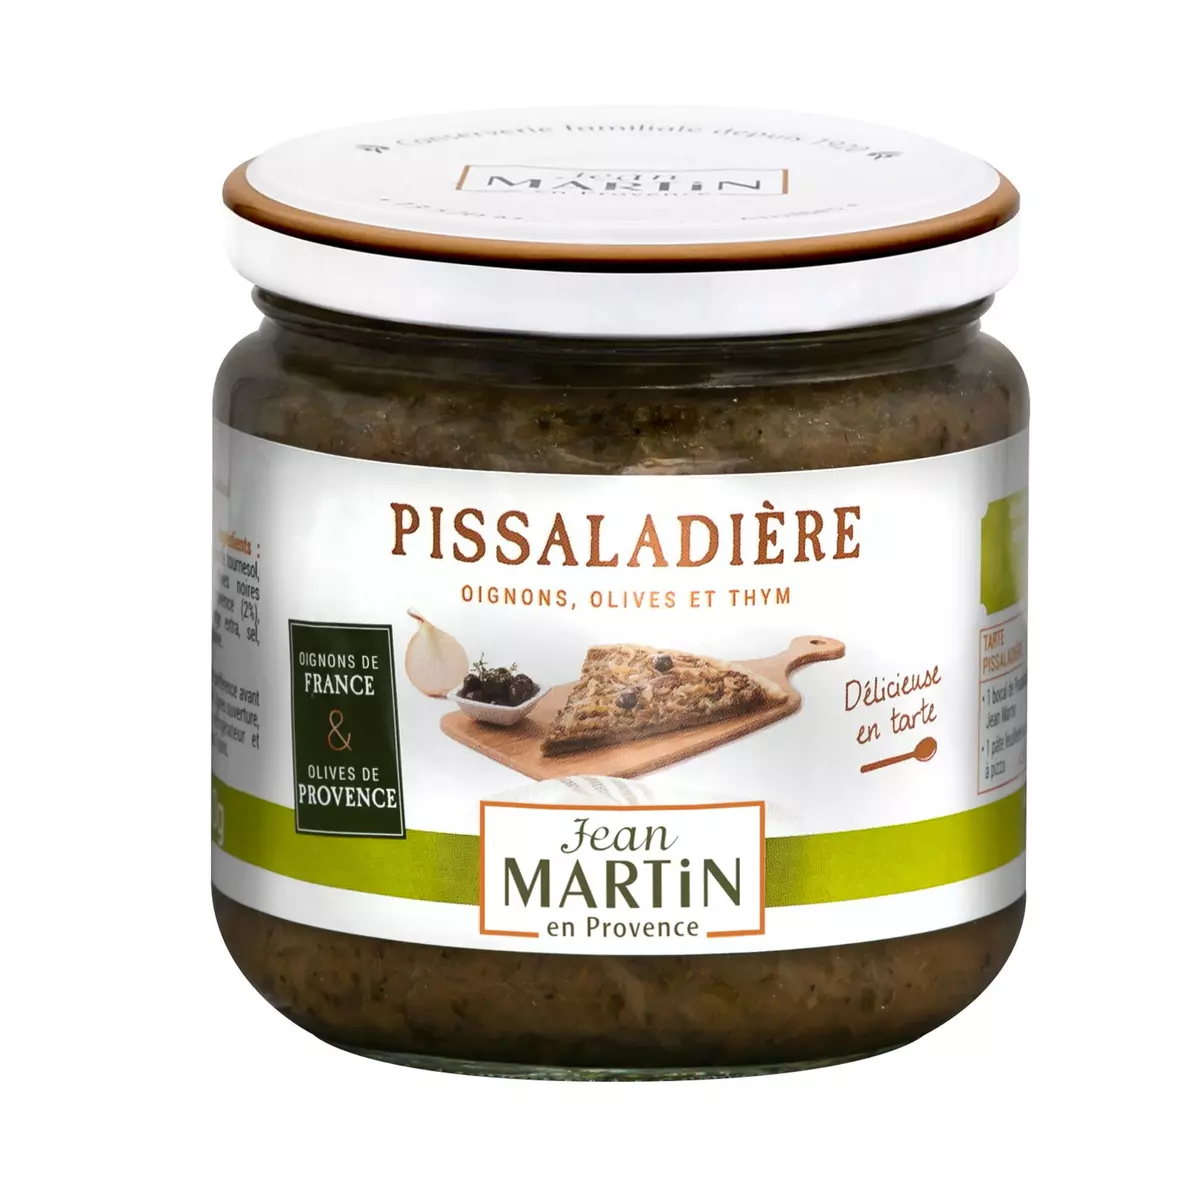 JEAN MARTIN Oignons pissaladière à l'olive noire Grossane et à l'anchois 360g